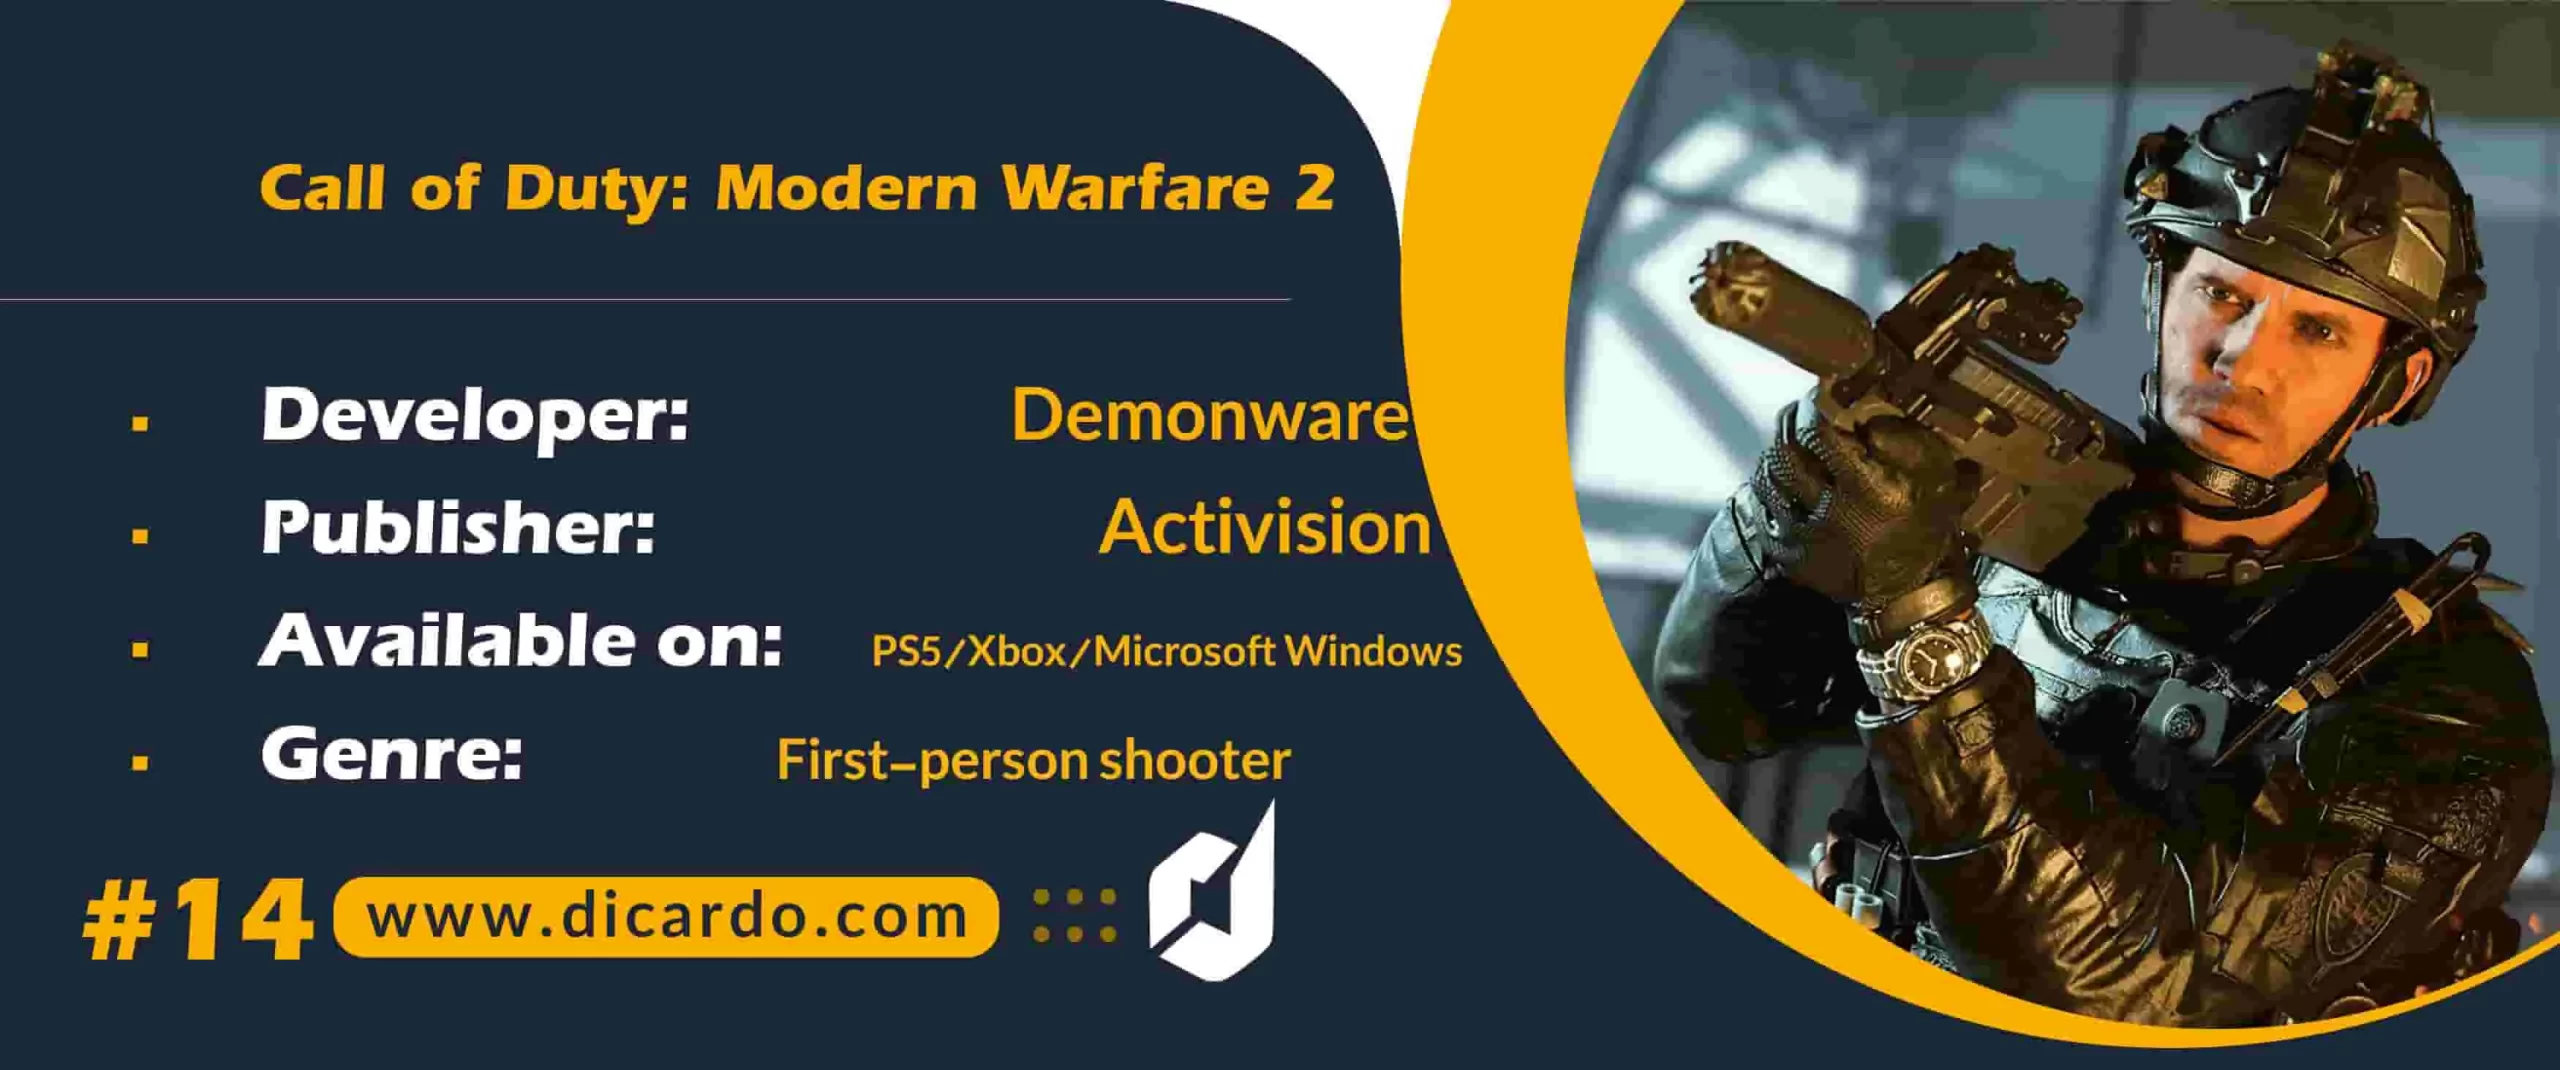 #14 کالاف دیوتی مدرن وارفر تو (Call of Duty: Modern Warfare 2 (October 28 از دیگر بازیهای 2022 و یکی از عزیزترین Call of Duties